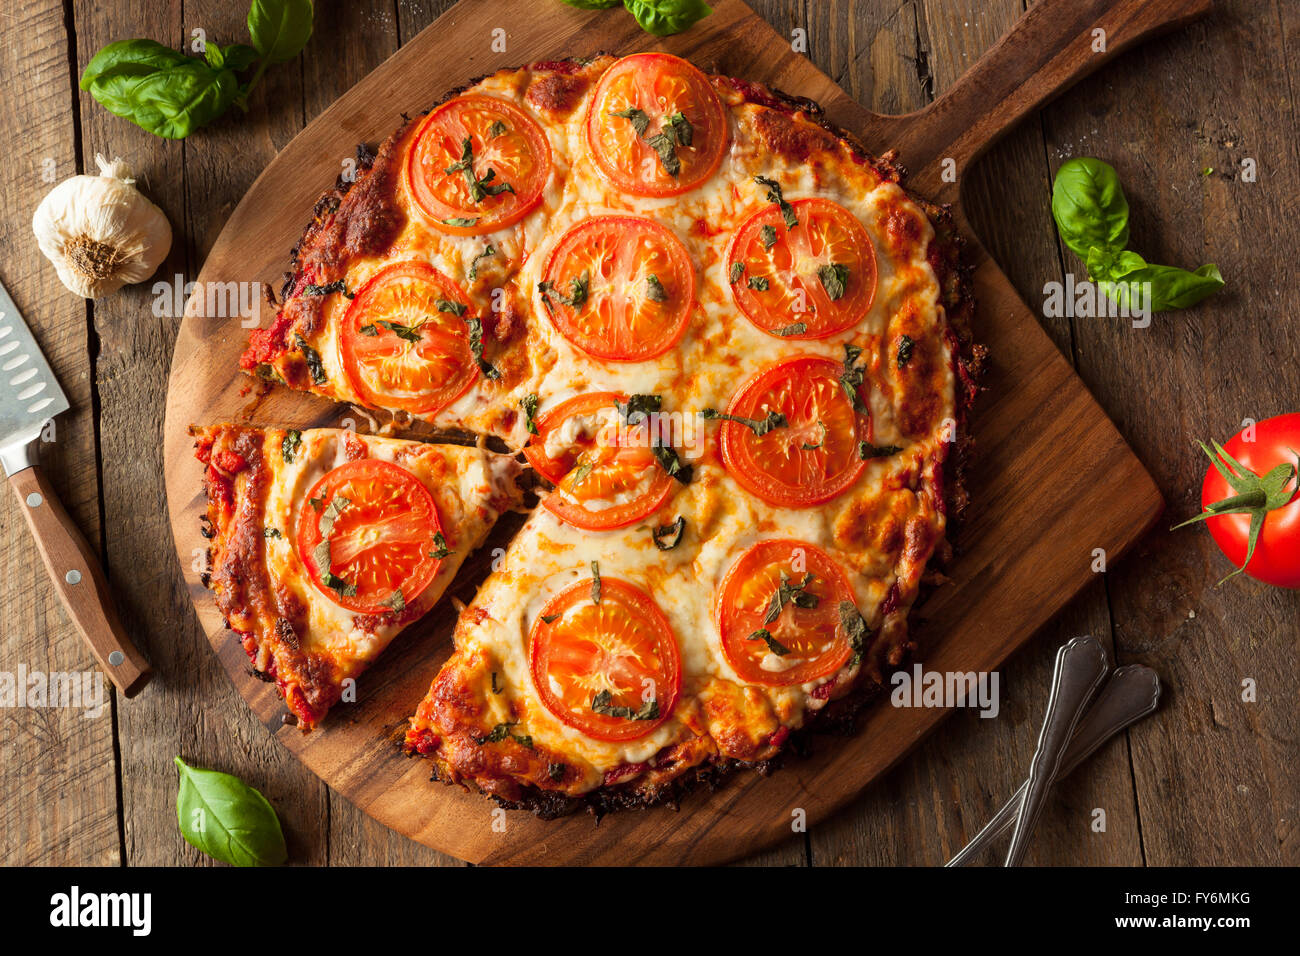 Homemade Vegan Cauliflower Crust Pizza with Tomato and Basil Stock Photo